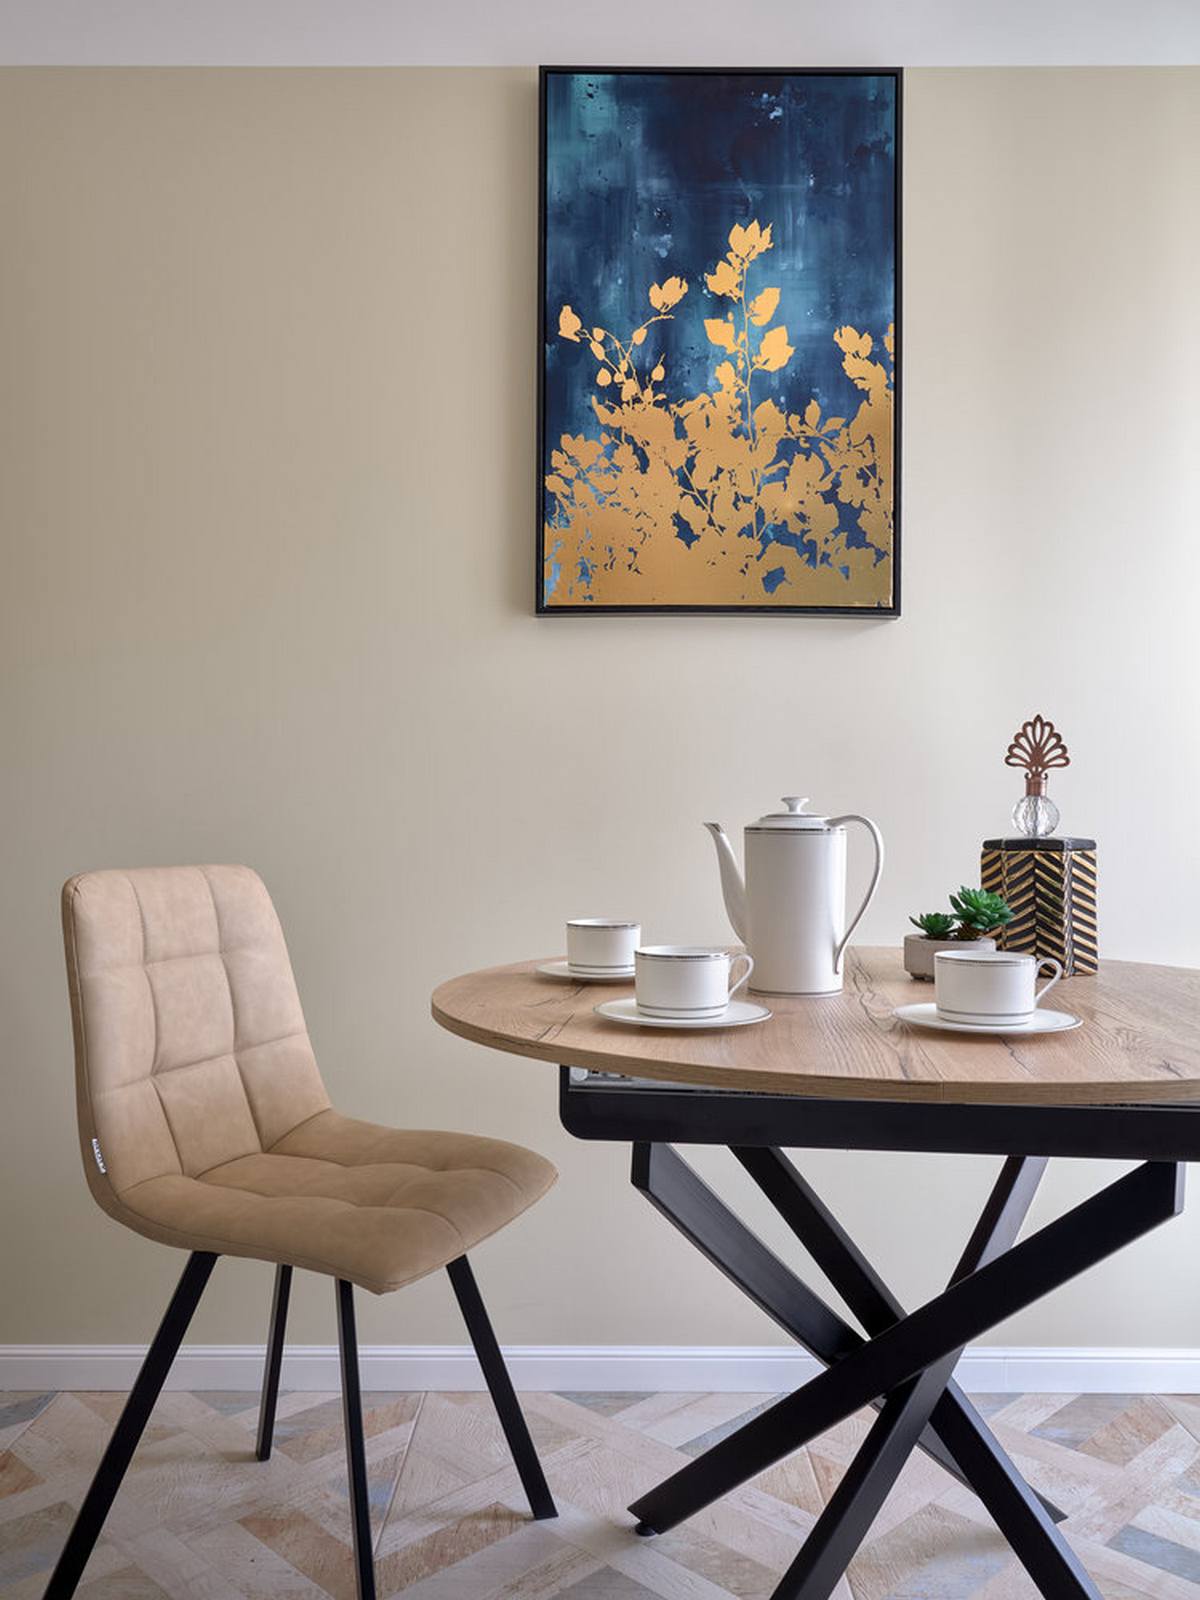 Khu vực ăn uống được tích hợp trong phòng bếp, gồm chiếc bàn gỗ hình tròn và bộ ghế màu be. Cả bàn và ghế đều có phần chân màu đen cho cảm giác vững chãi. Bức tranh treo tường phối hợp giữa màu xanh lam đậm và vàng đồng tạo điểm nhấn quyến rũ trên bức tường.